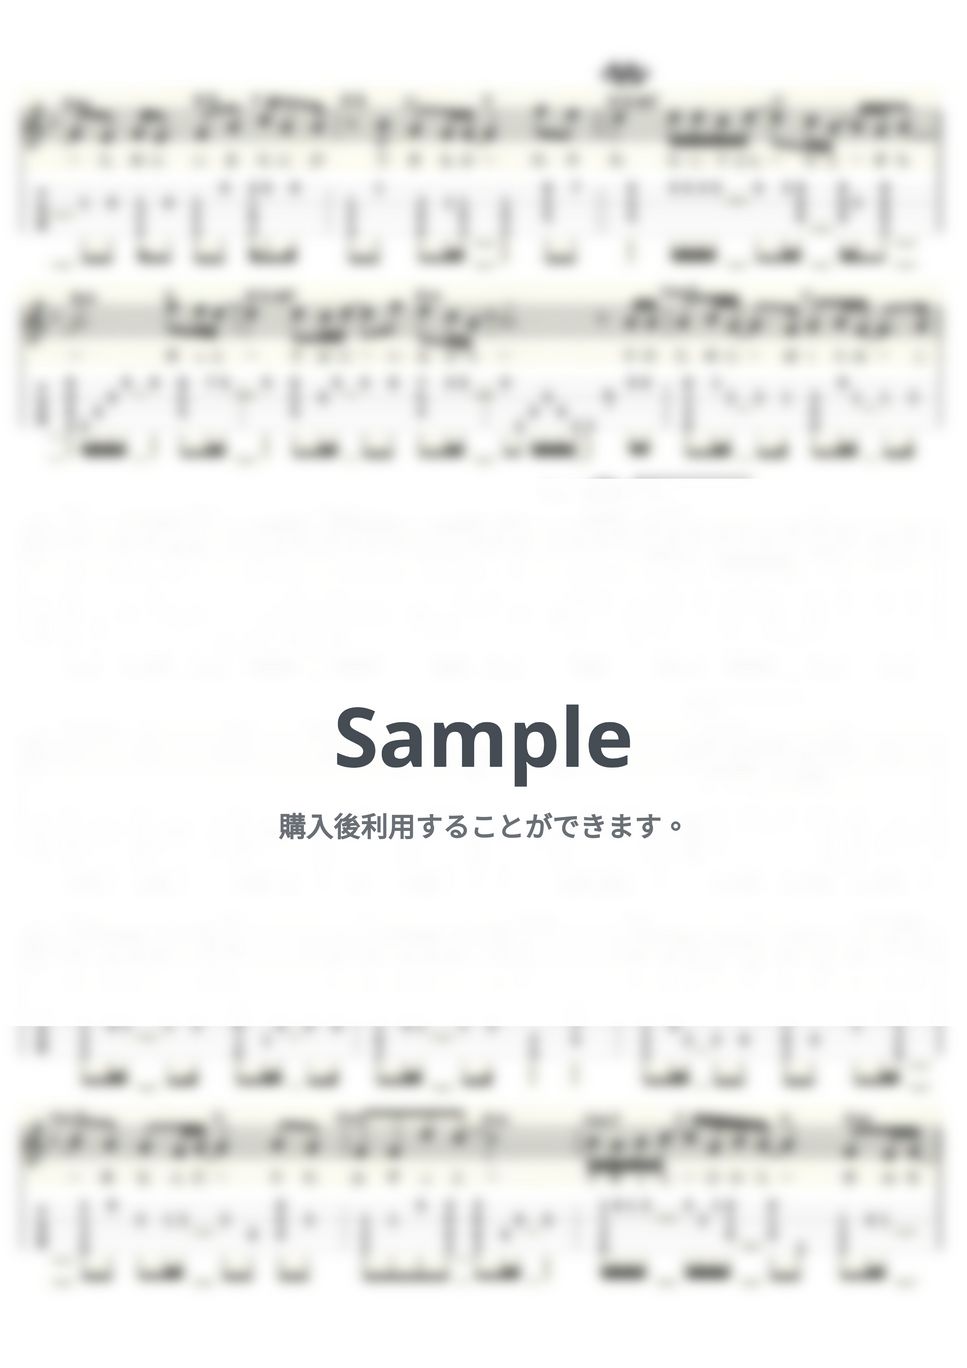 小田和正 - たしかなこと (ｳｸﾚﾚｿﾛ / Low-G / 中級～上級) by ukulelepapa